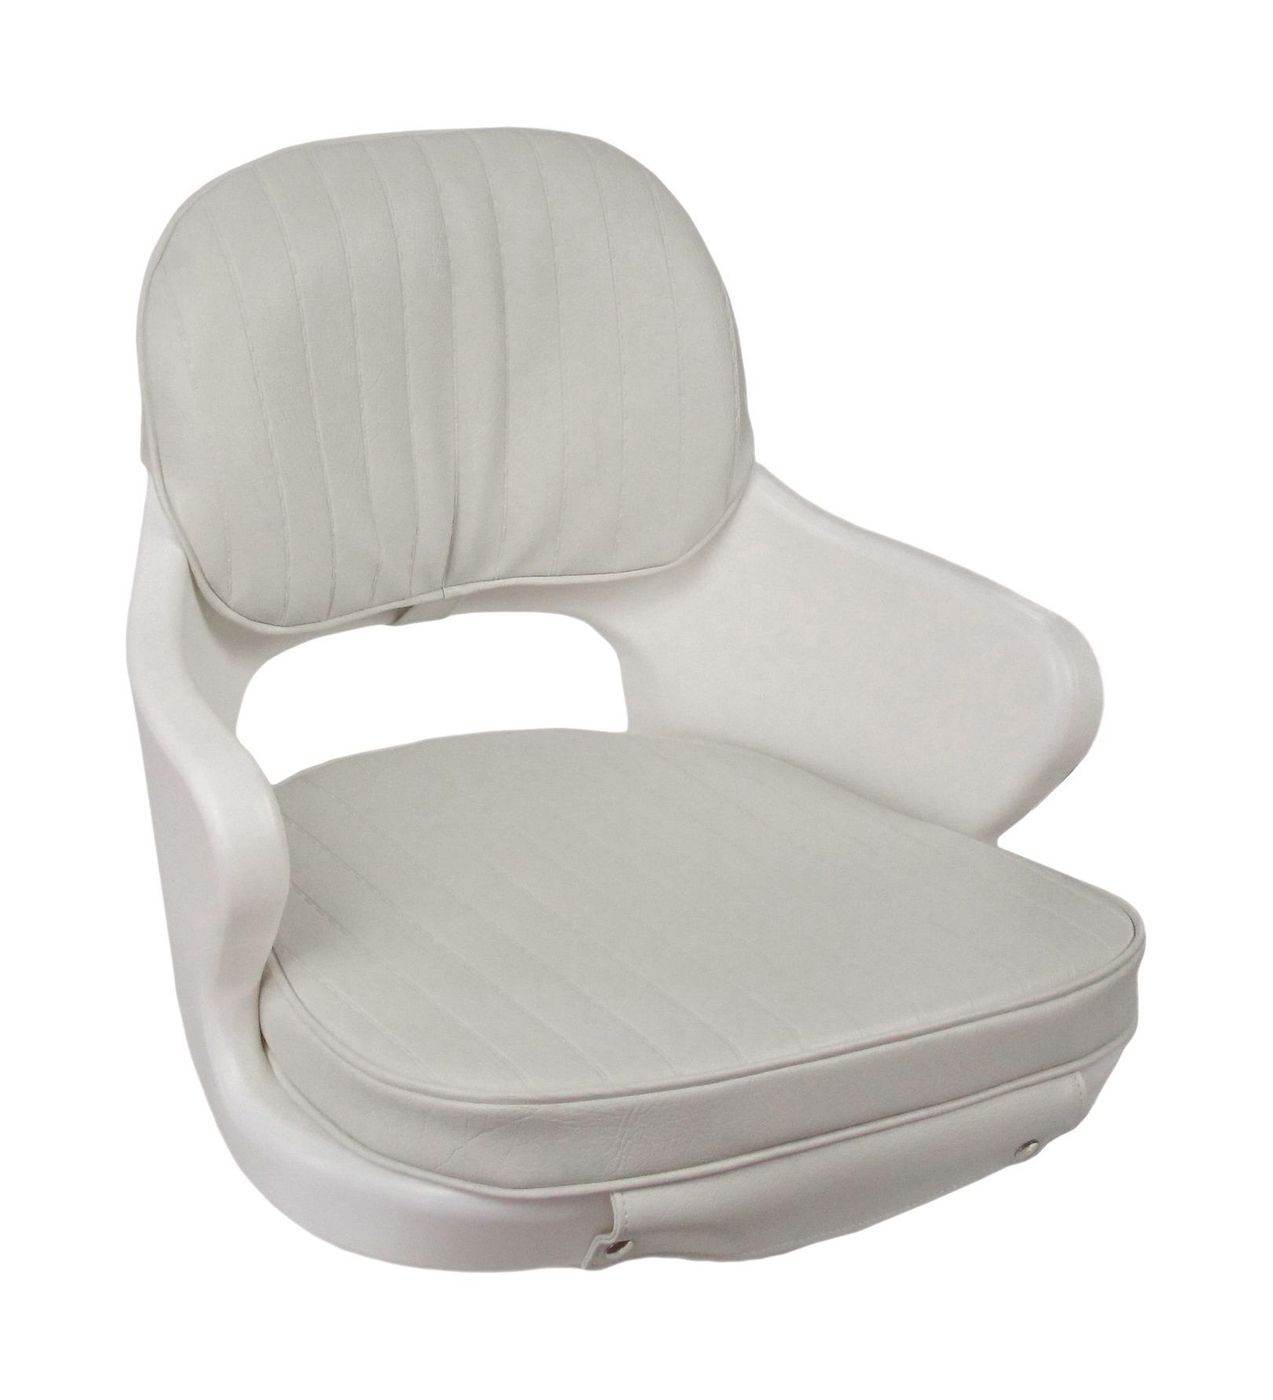 Кресло YACHTSMAN мягкое, съемные подушки, материал белый винил 1060410C подиум акустический aura ваз 2110 11 12 винил стандарт 20 х16 рупор pdv 2110 11 12 86r 75624